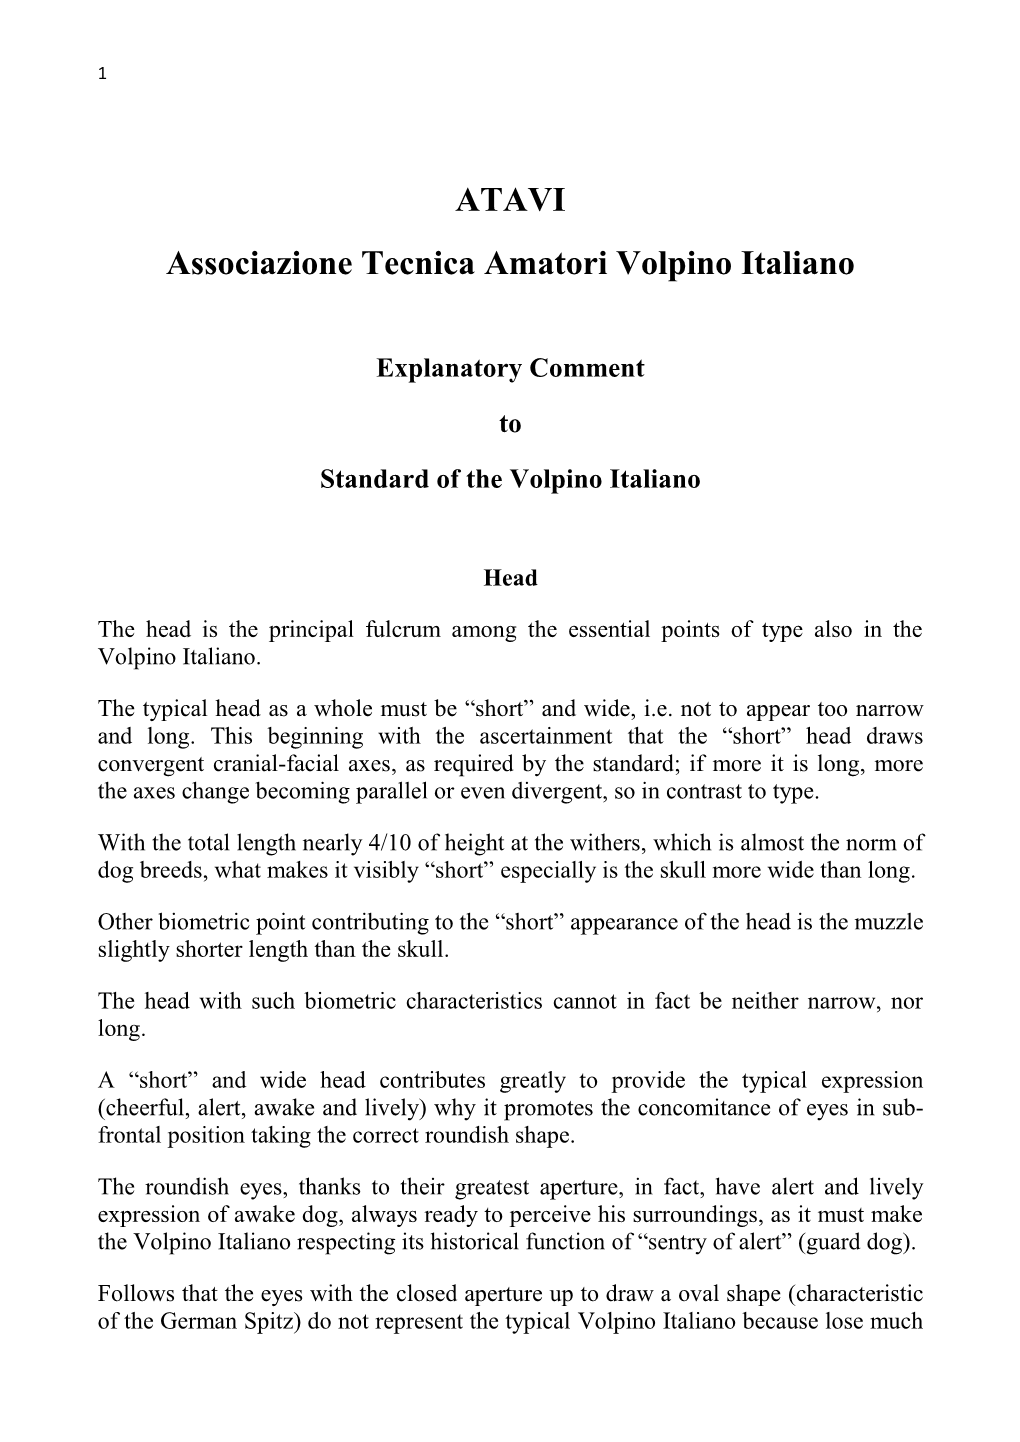 ATAVI Associazione Tecnica Amatori Volpino Italiano